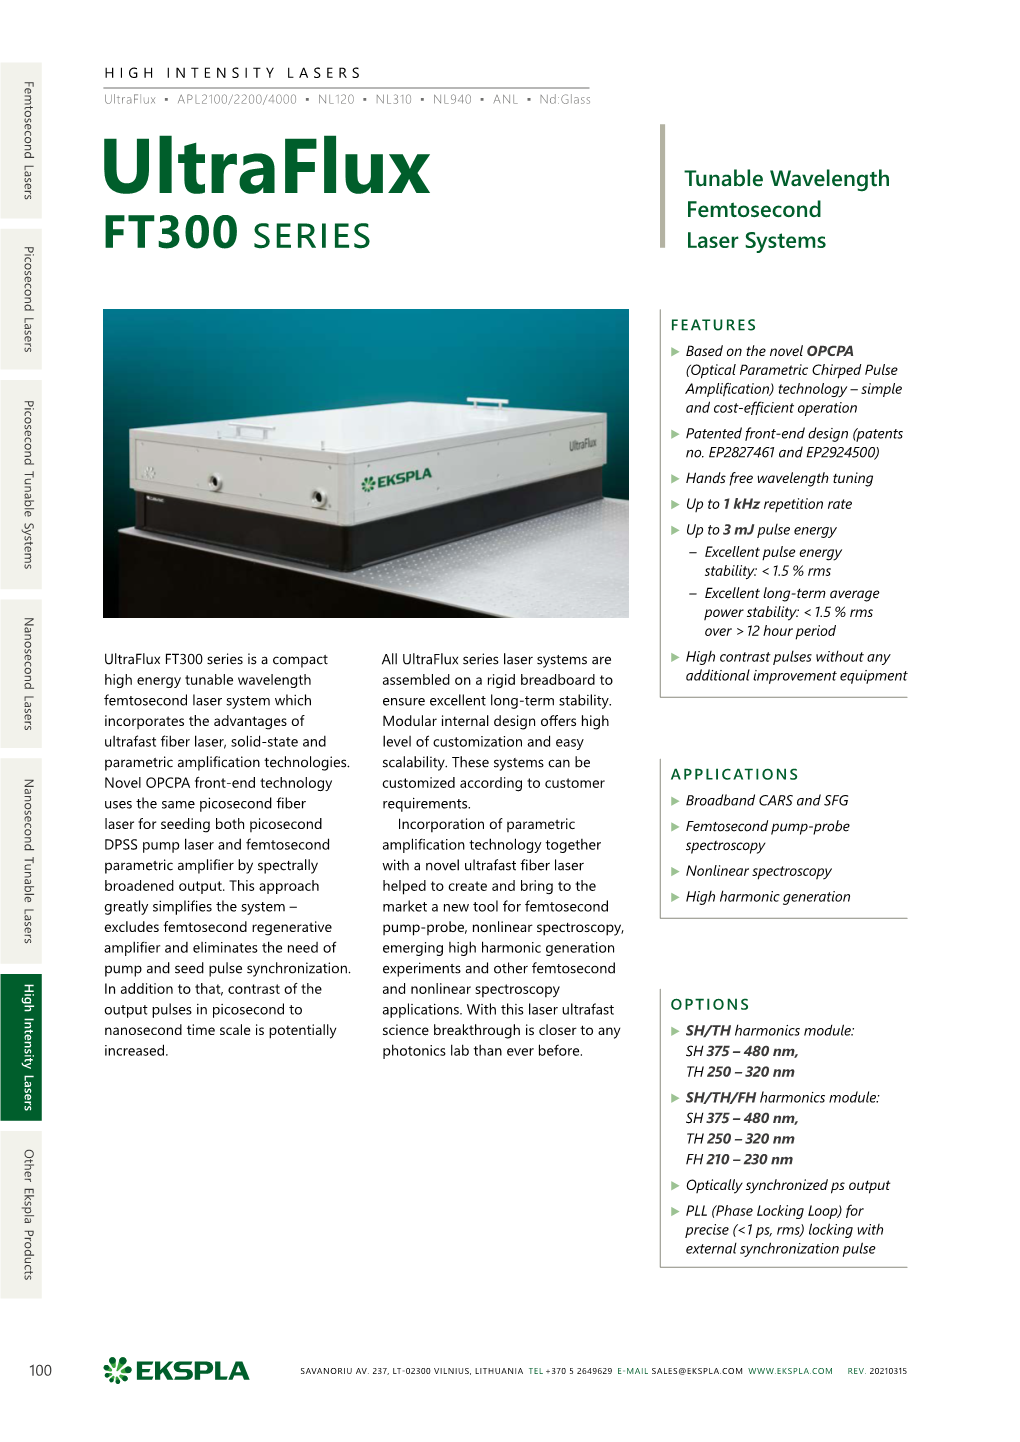 Ultraflux Series Laser Systems Are SAVANORIU 237, AV